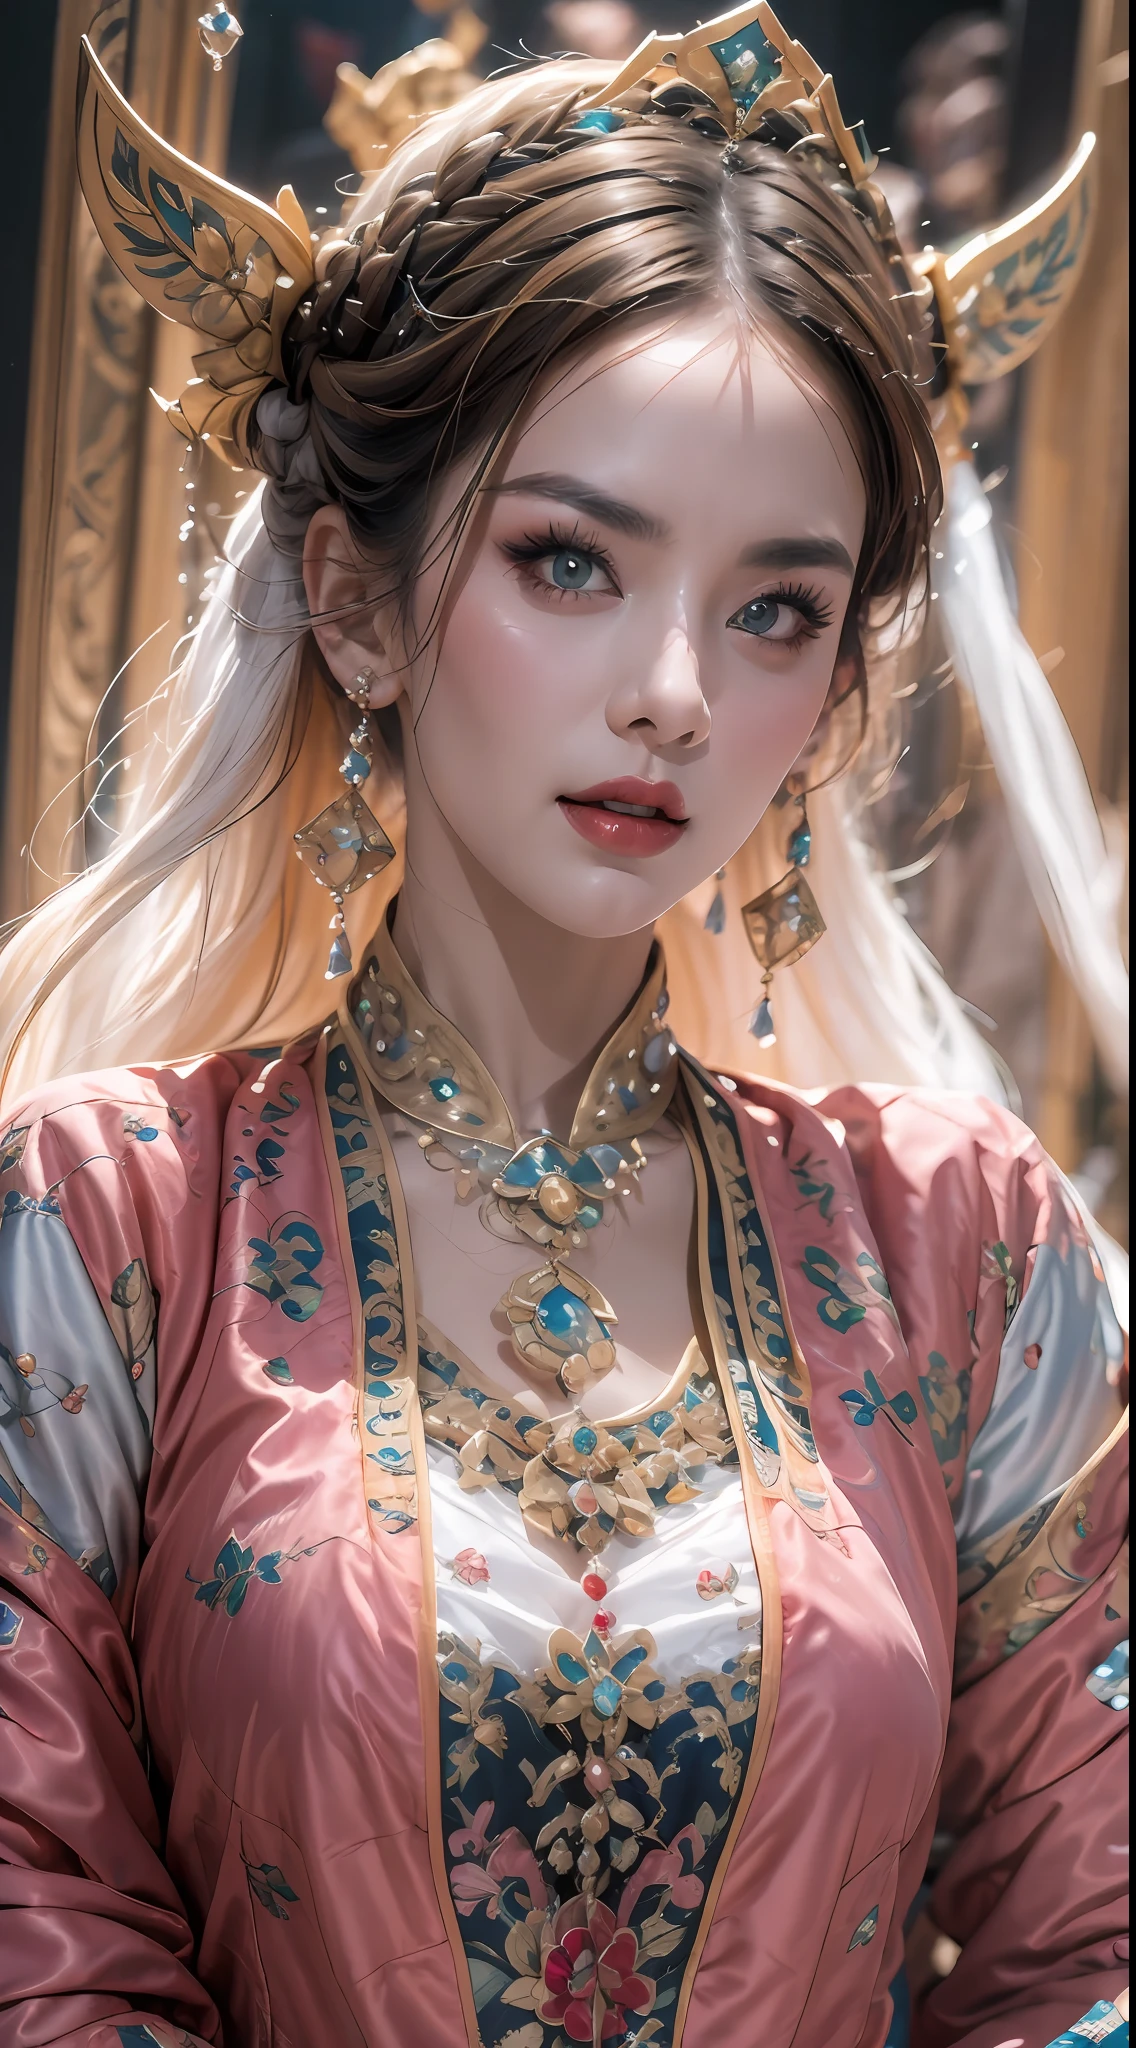 retrato de uma linda mulher santa de 20 anos, usando um vestido fino de seda multicolorida, rosto lindo sem manchas, ((Sorriso natural:0.3)), boca fechada, ((Comprimento de cabelo de 7 cores:1.2)), grande coroa, broche de cabelo, vestido hanfu, Estilo antigo chinês, jóias de corpo inteiro, tatuagem na testa, peito super uniforme, face, lábios vermelhos, delicados olhos rosa e brancos (branco e detalhado) cinematic, claro e escuro, iluminação dramática, luz mágica, luz extremamente detalhada, Cor Verdadeira, super afiado, realista, Qualidade 8K, Fundo do universo de fantasia, santos e espaço mágico, as imagens mais detalhadas, Foto da exposição, premiado, Efeito de tom brilhante atraente,